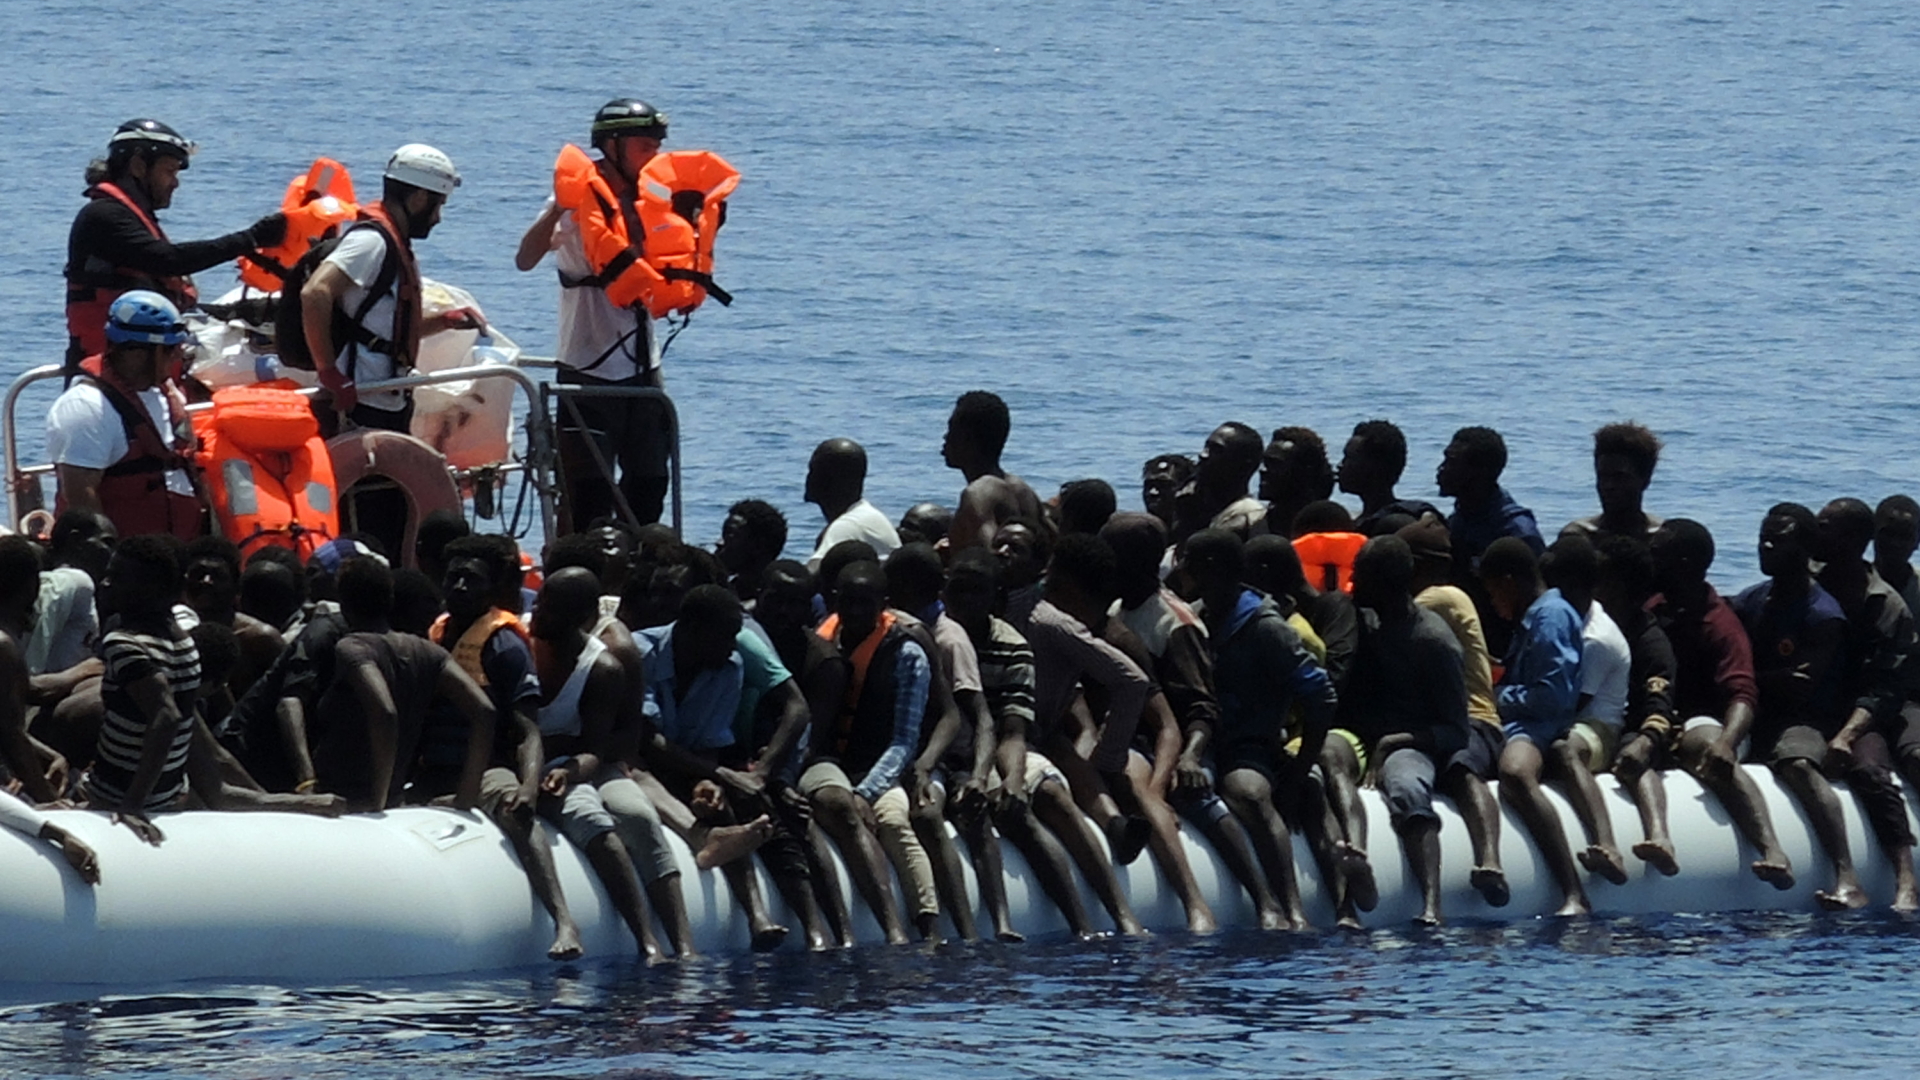 Flüchtlinge im Mittelmeer bei ihrer Rettung durch die Hilfsorganistionen "Ärzte ohne Grenzen" und "SOS Méditerranée". | dpa